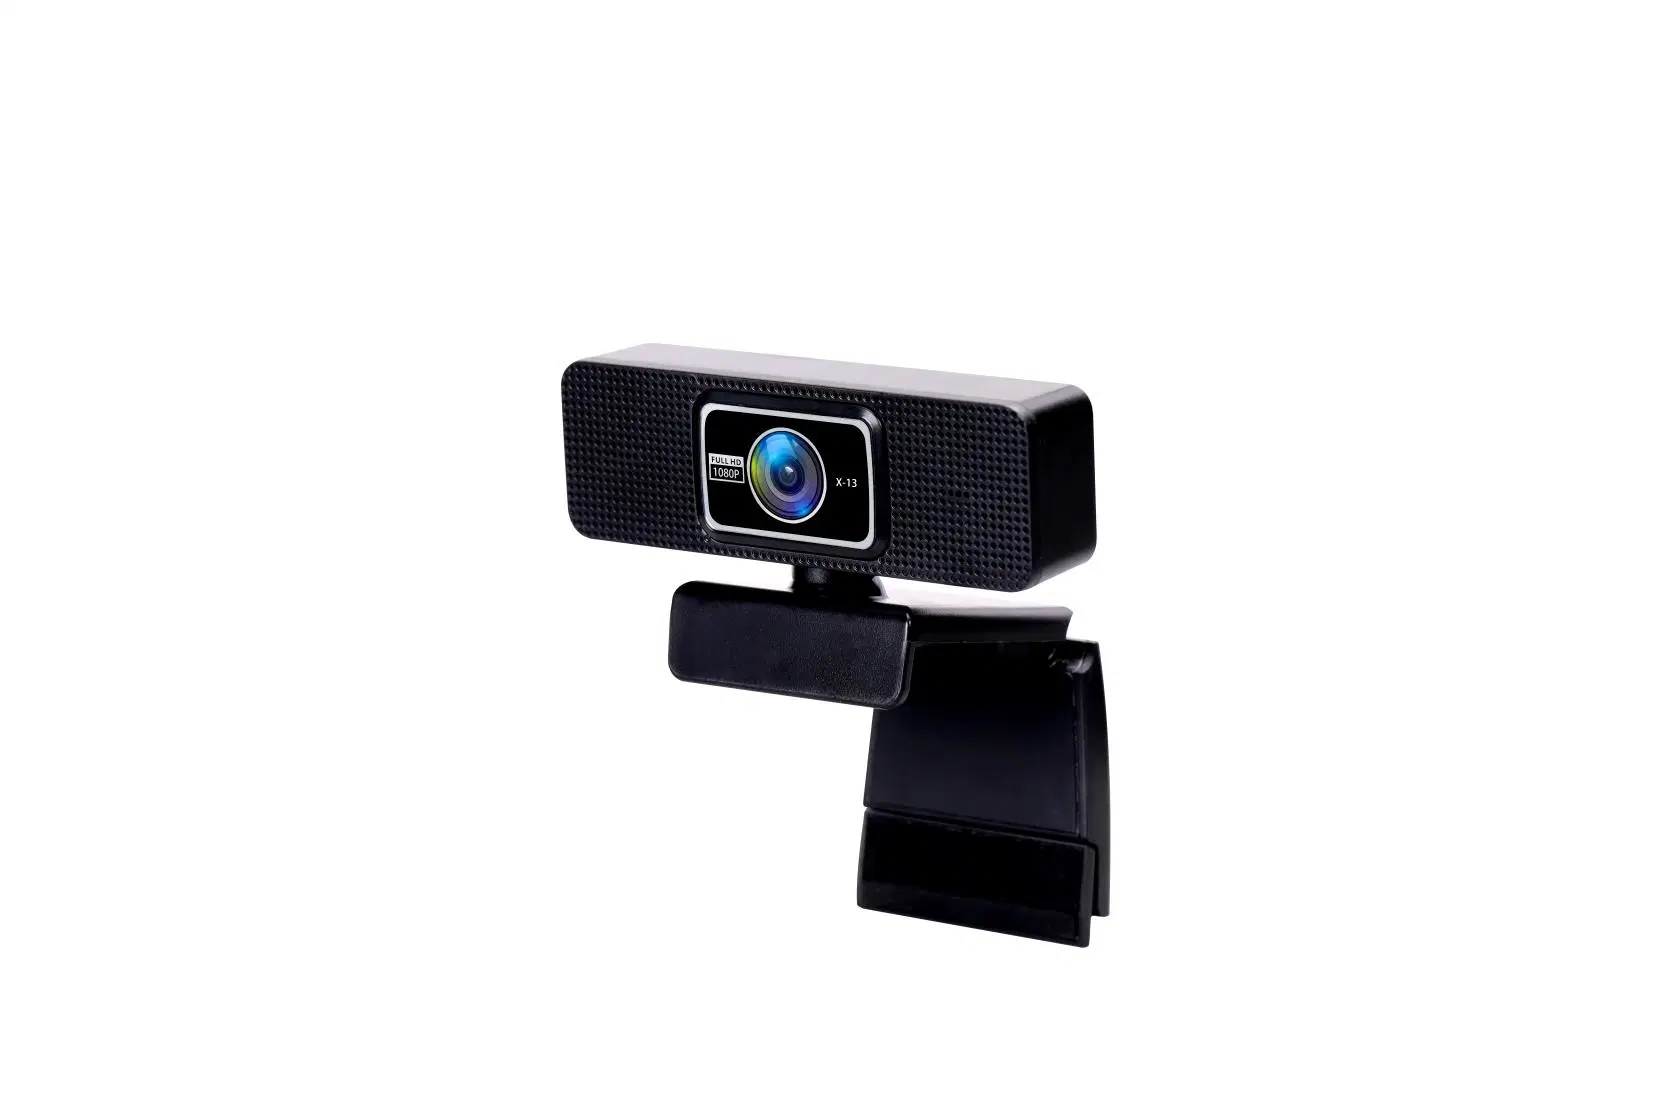 وصول جديد HD Web Camera 1080p Video Call Meeting Broadcast كاميرا ويب USB مباشرة لكاميرا ويب على الكمبيوتر